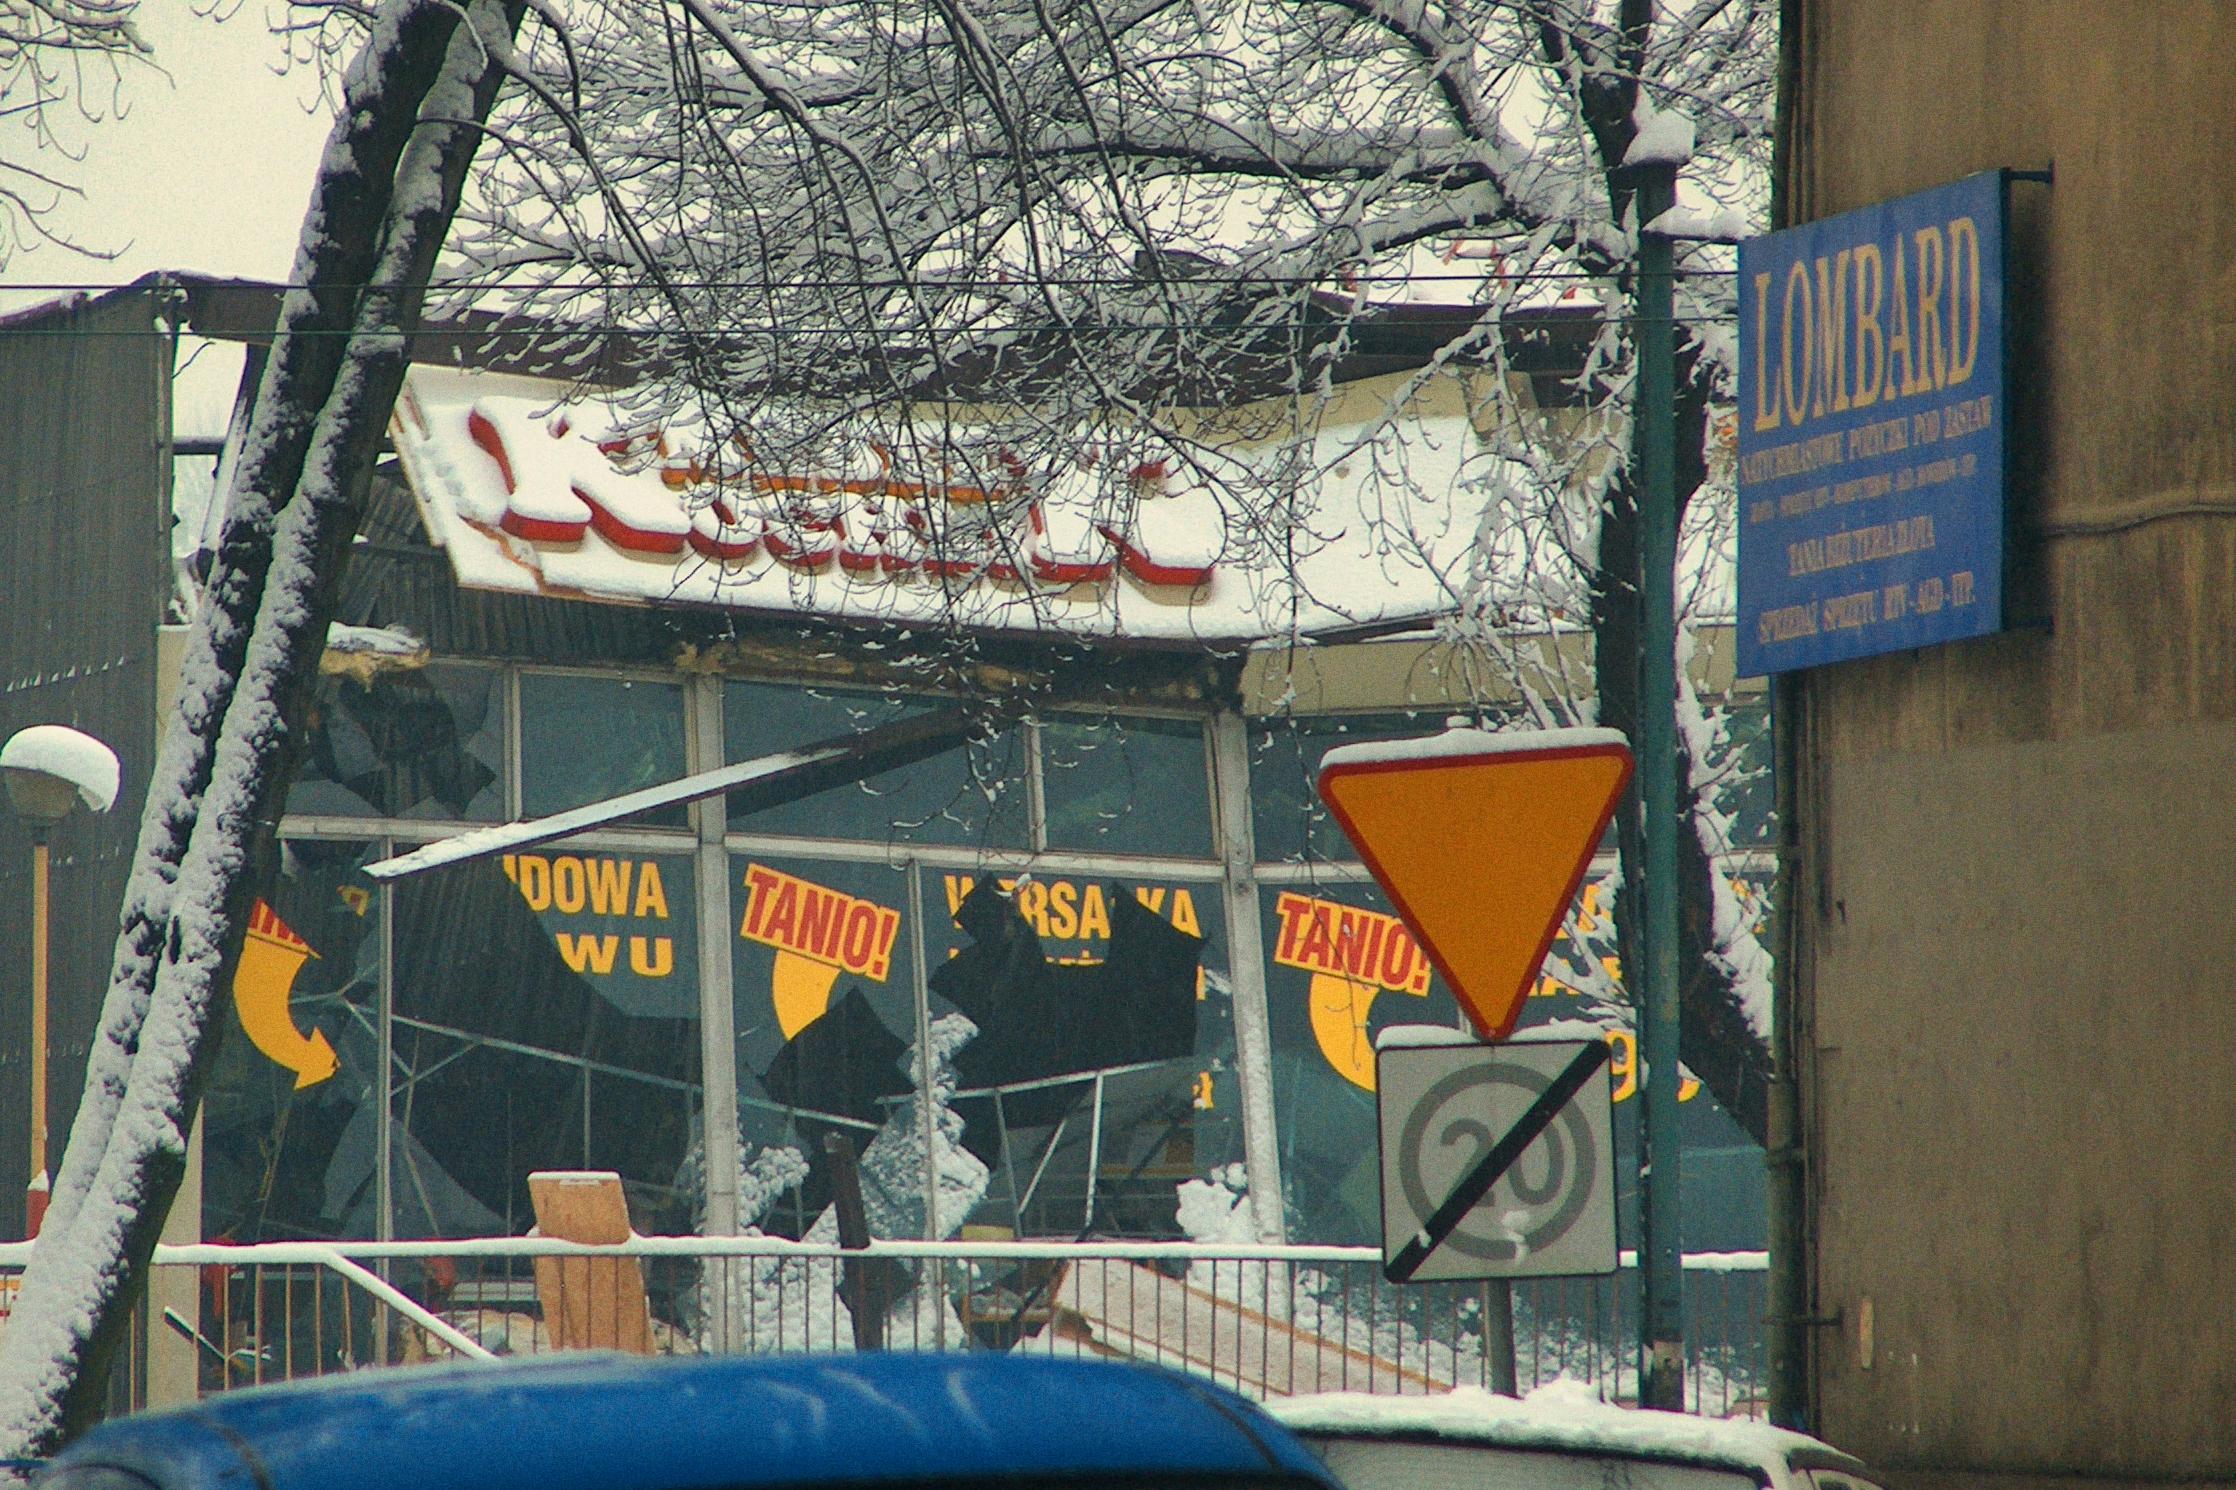 15 lat temu : 3 stycznia 2006 pod ciężarem śniegu zapadł się dach pawilonu handlowego Honoratka w Świętochłowicach.